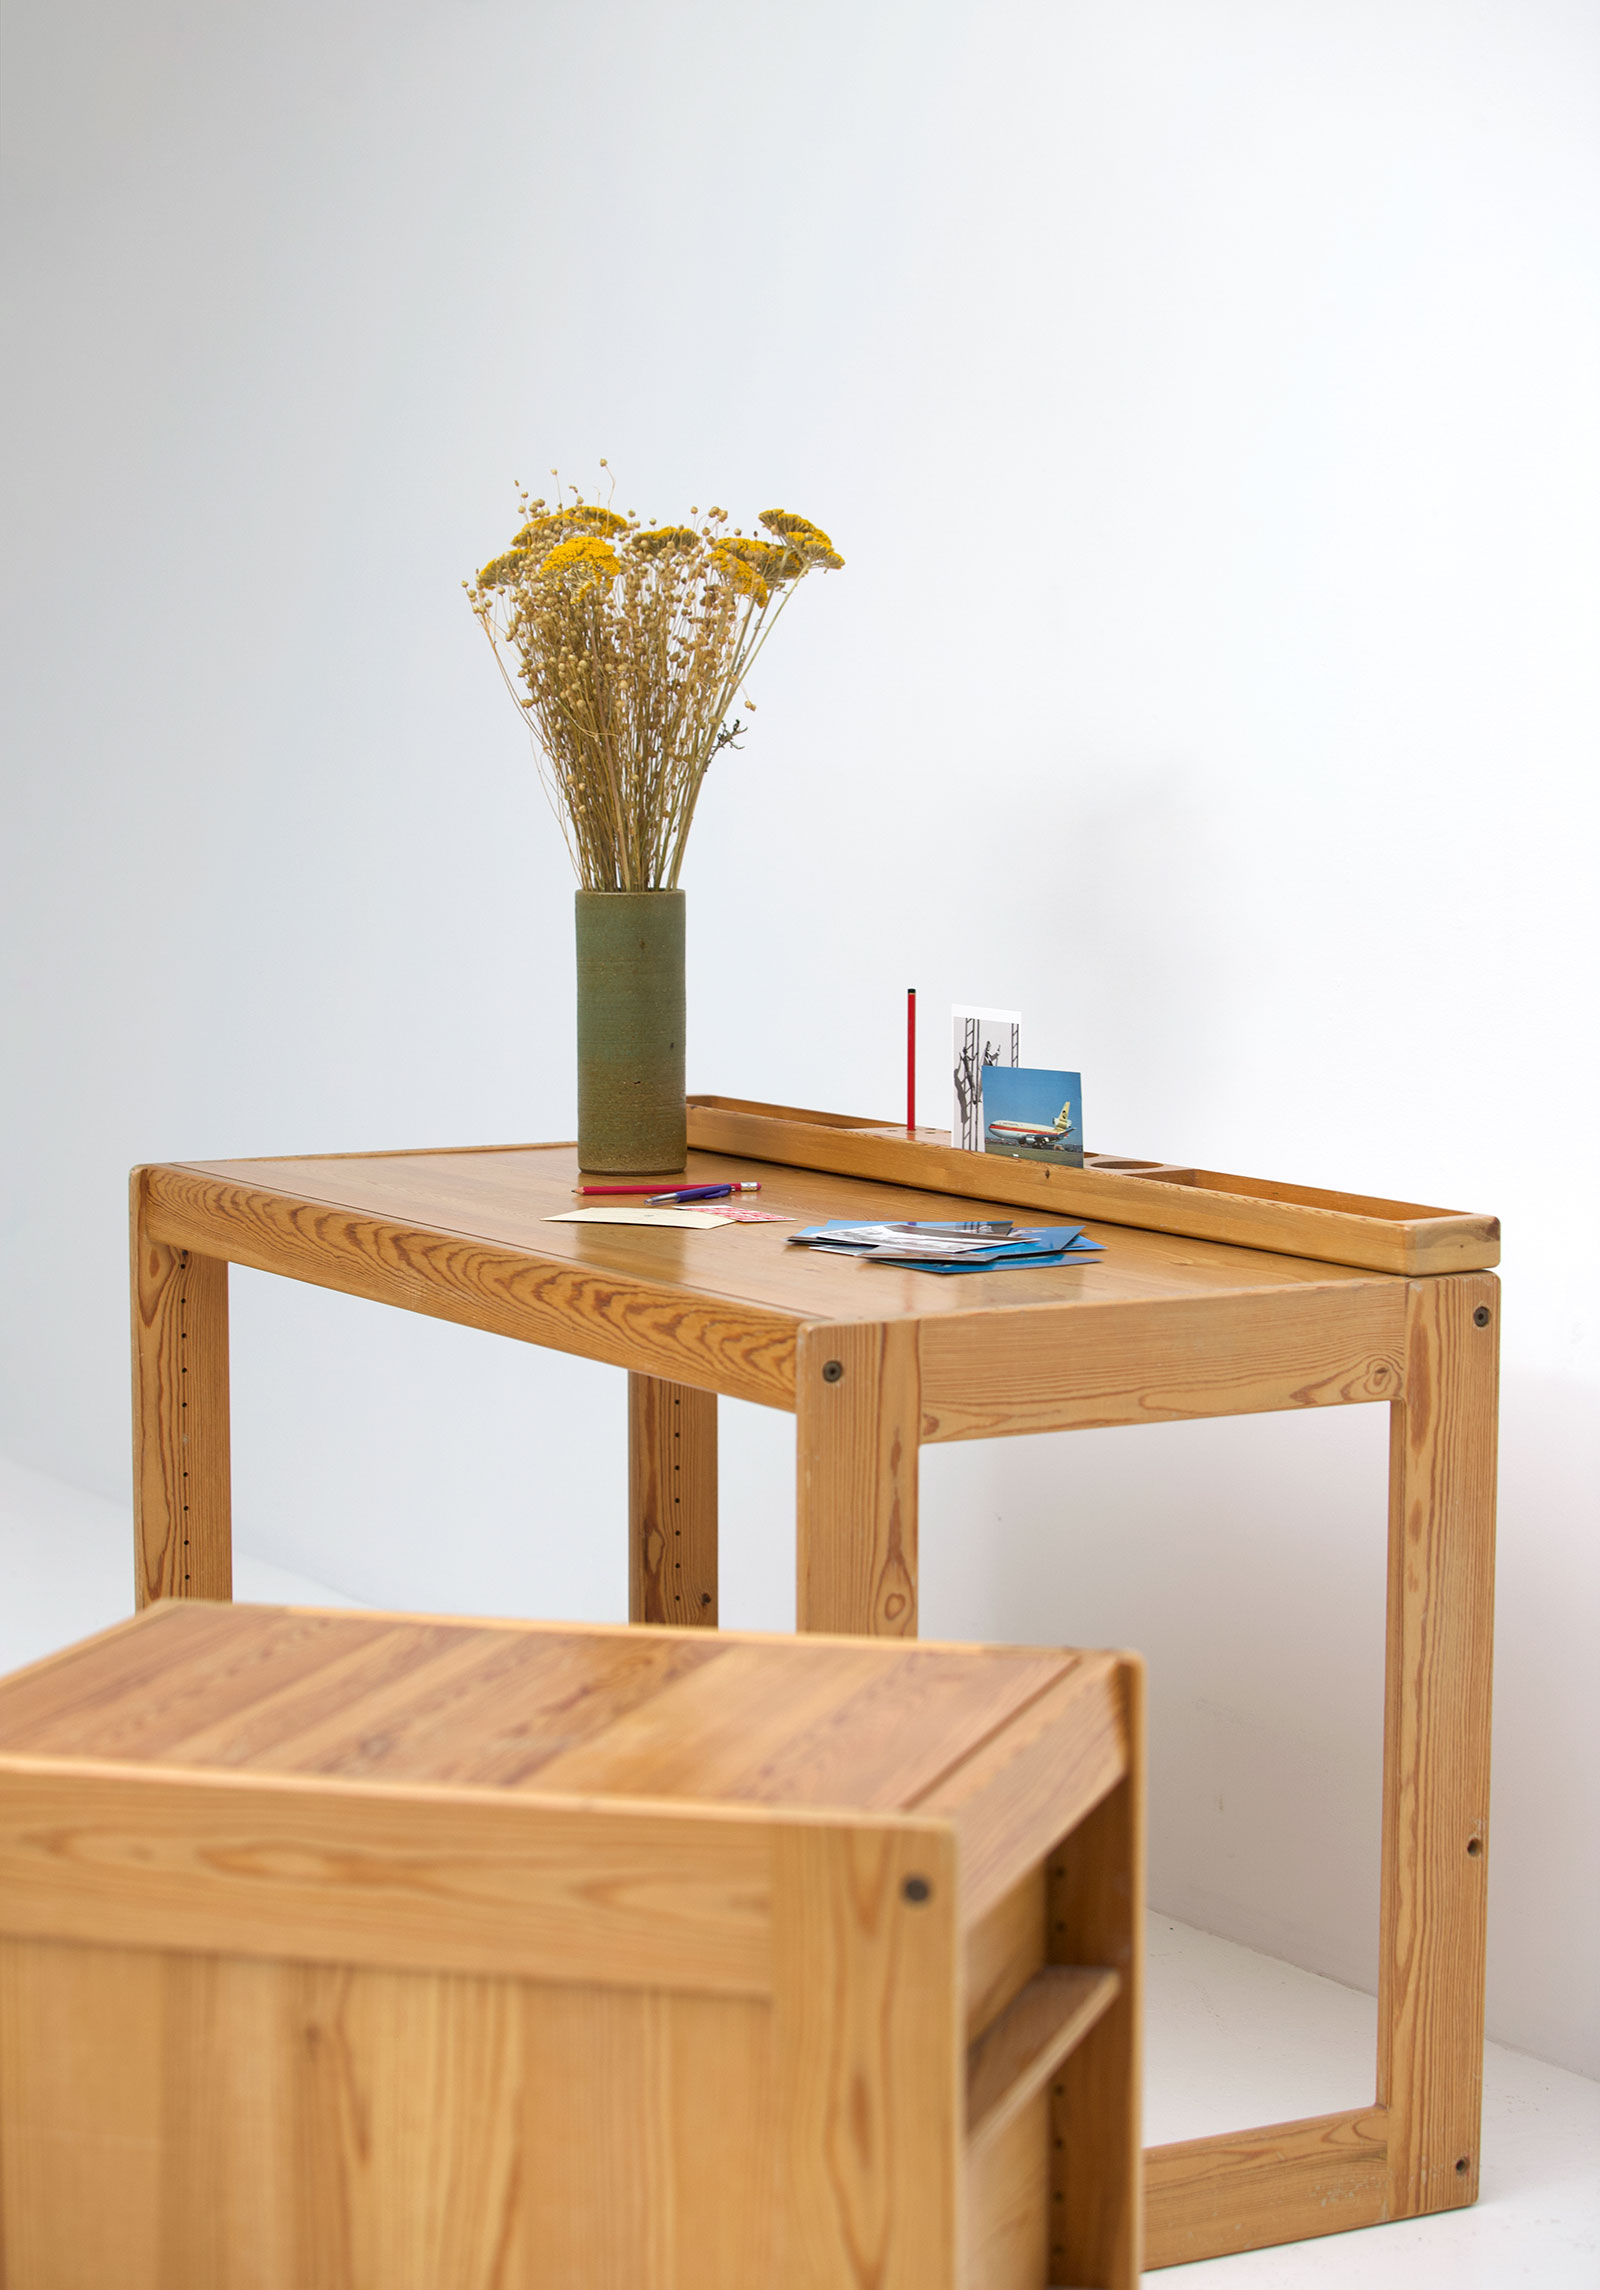 Childrens desk furniture by Pierre Grosjean setimage 9